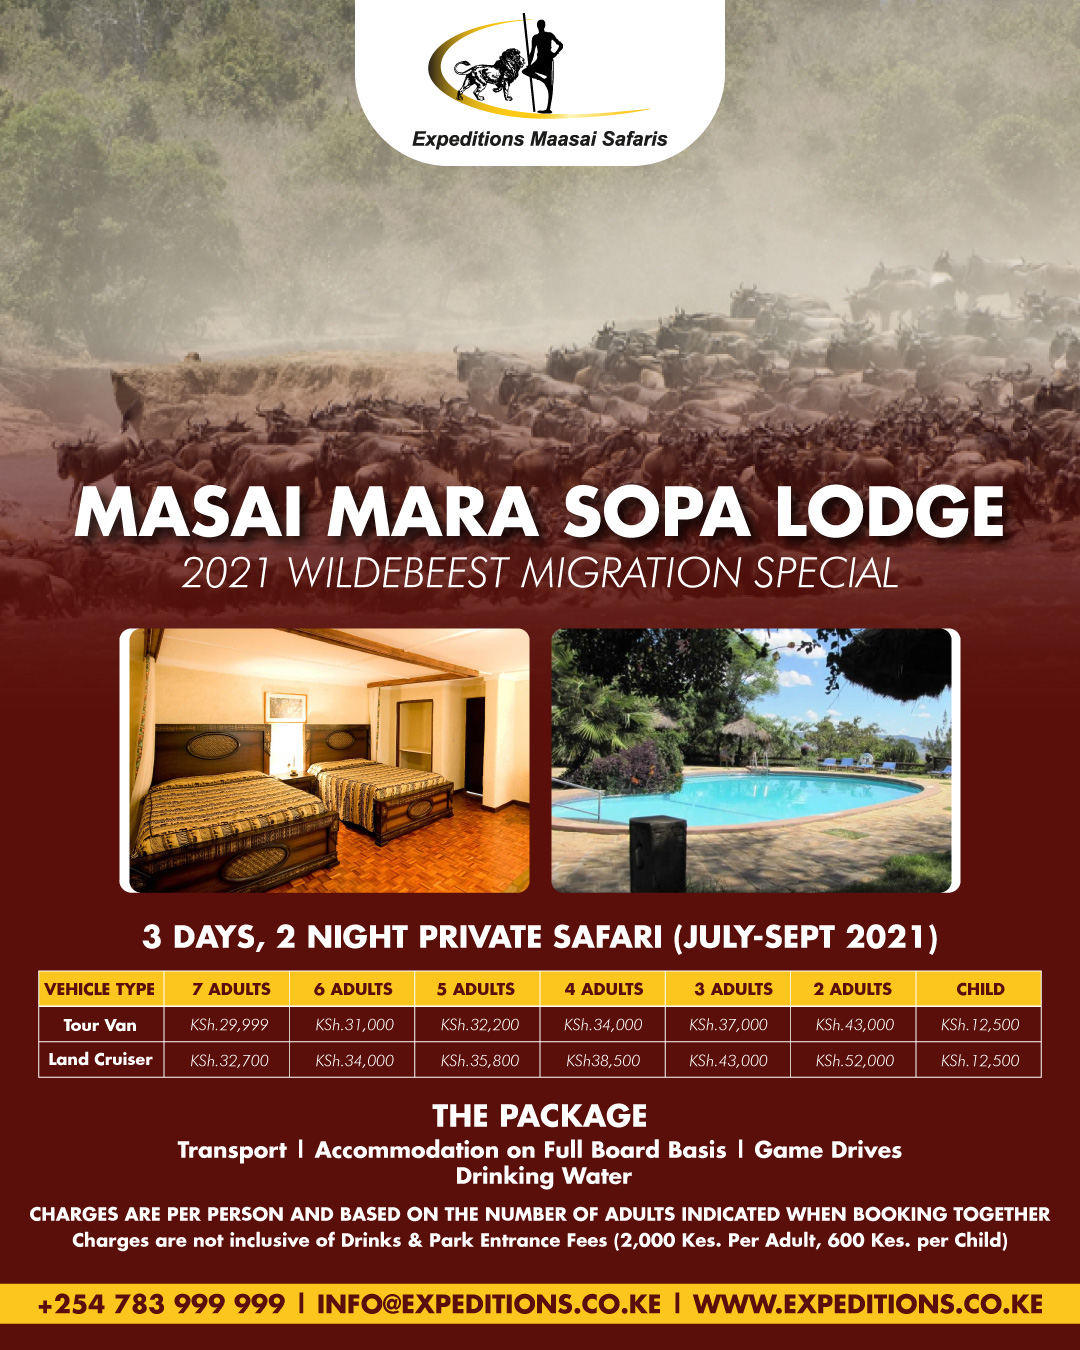 3 Days, 2 Nights Masai Mara Sopa Lodge Wildebeest Migration Private Safari